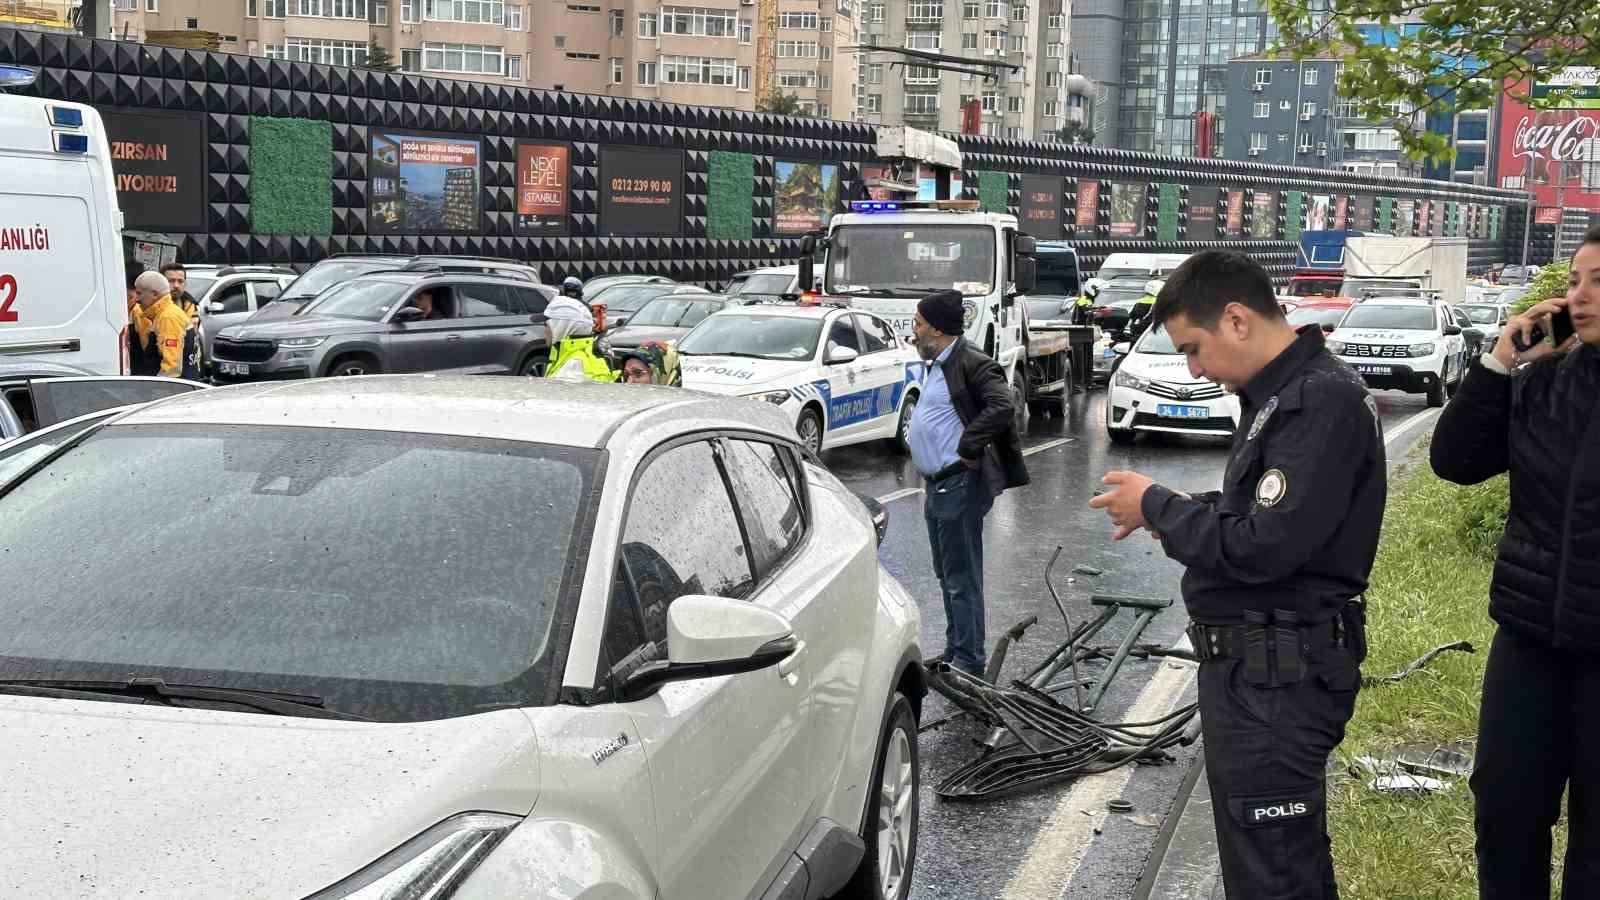 Beşiktaş Büyükdere Caddesi’nde çok sayıda aracın karıştığı zincirleme kaza meydana geldi. Olay yerine itfaiye, polis ve sağlık ekipleri sevk edildi. Ekiplerin kazaya müdahalesi sürüyor.
